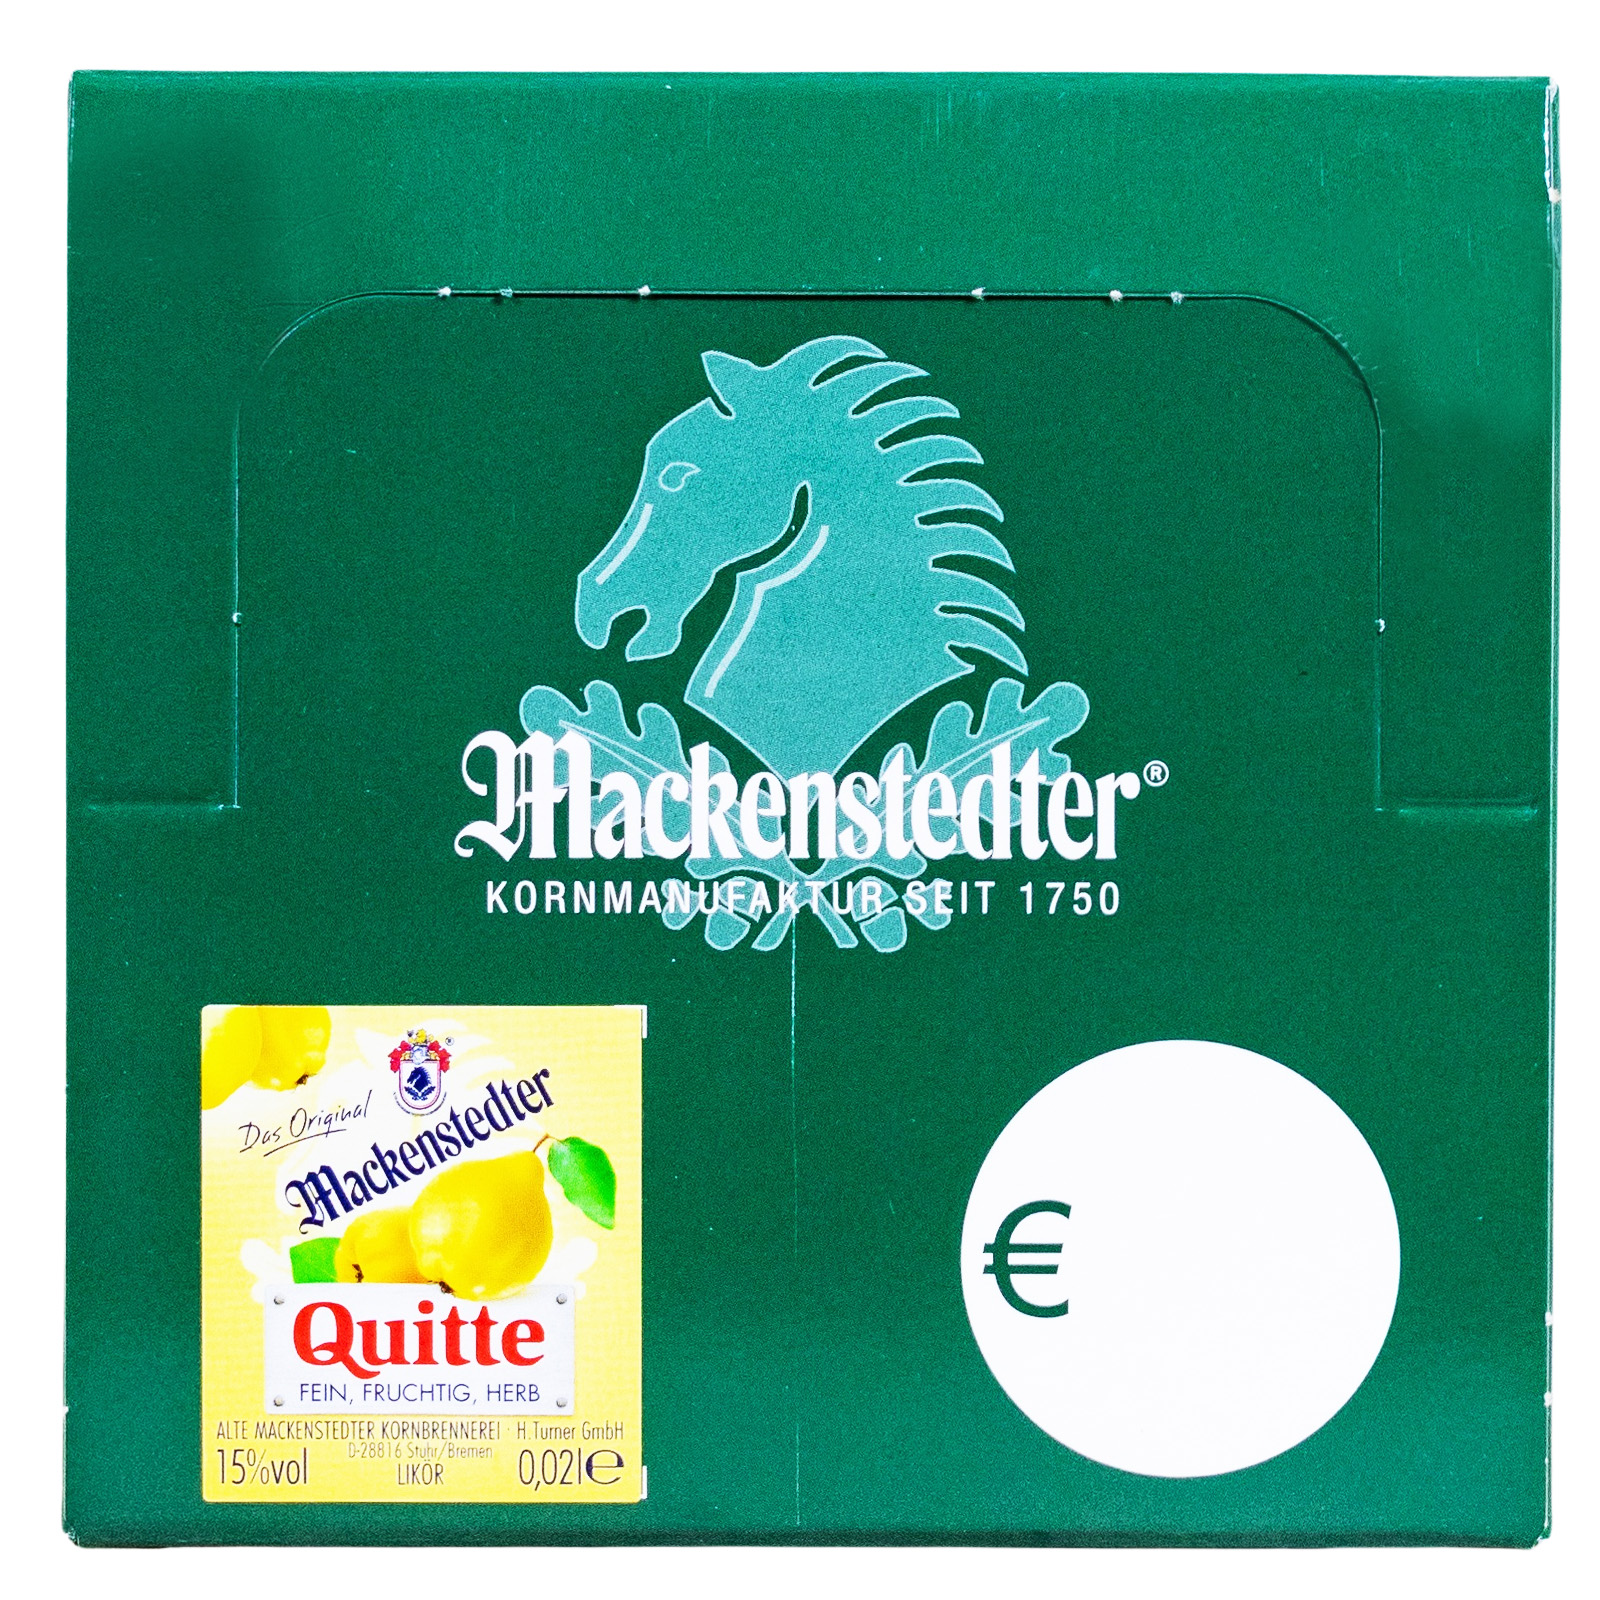 Paket [25 x 0,02L] Mackenstedter Quitte Likör - 0,5L 15% vol